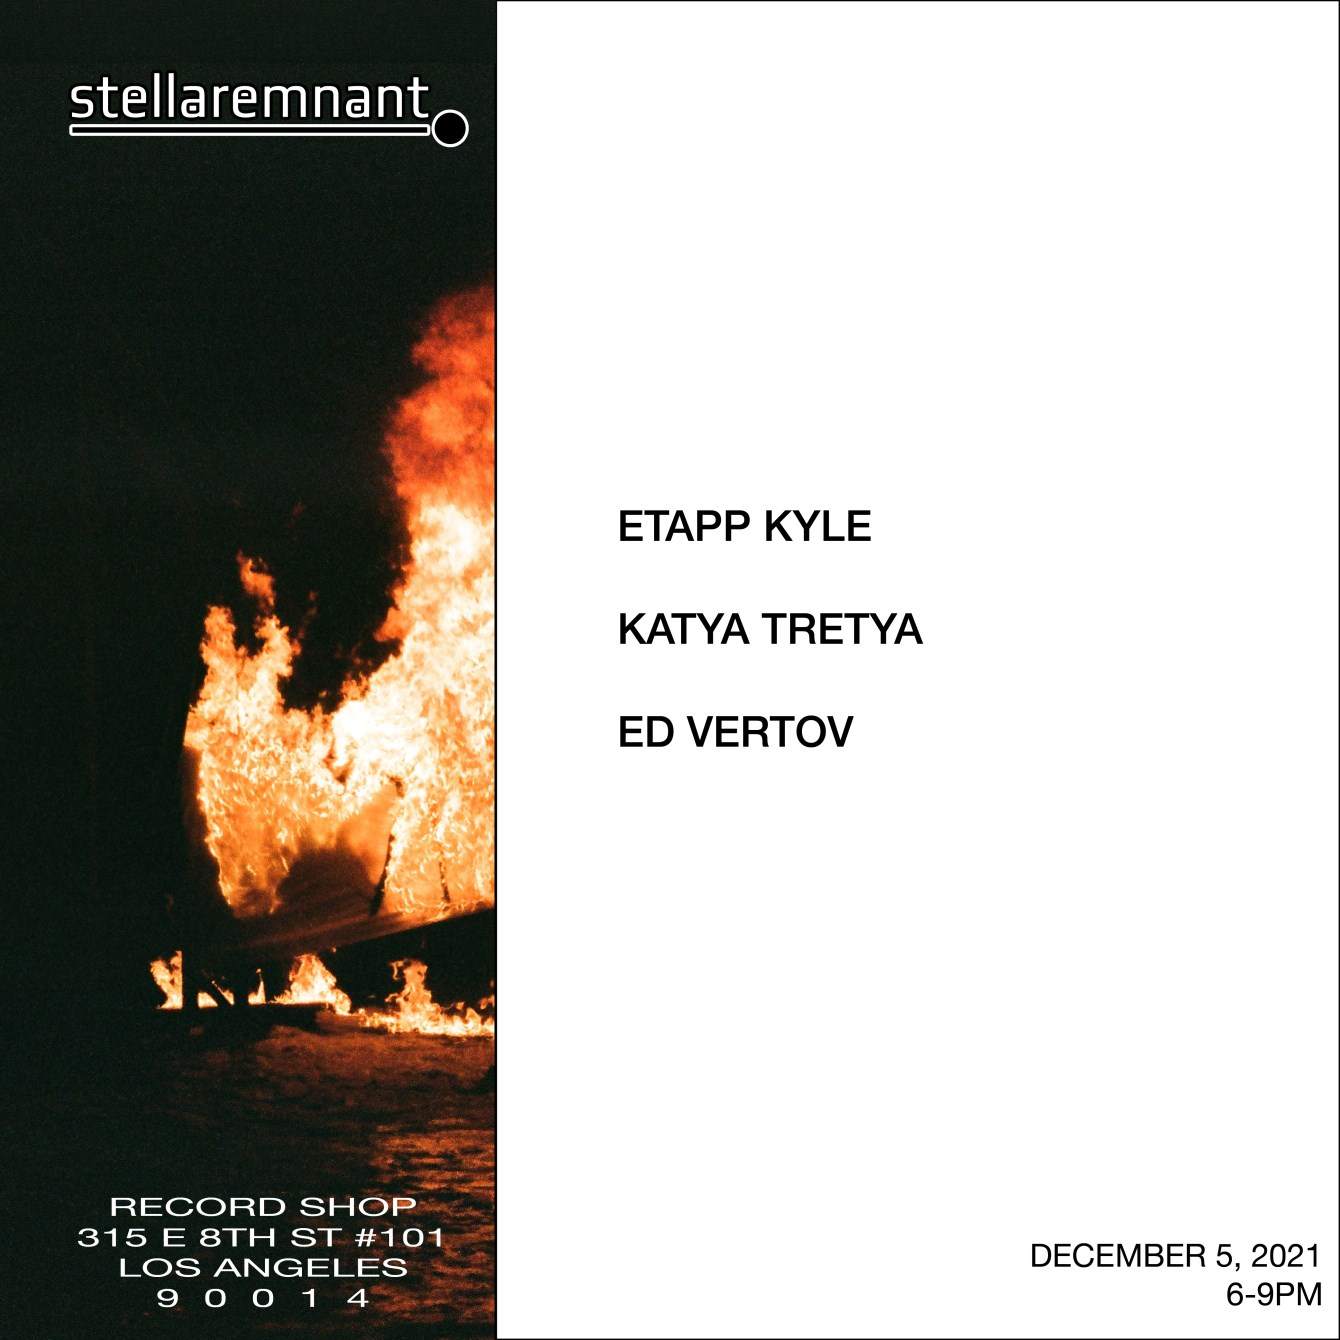 Stellar Remnant Instore Session: Etapp Kyle, Katya Tretya, Ed Vertov - Página frontal